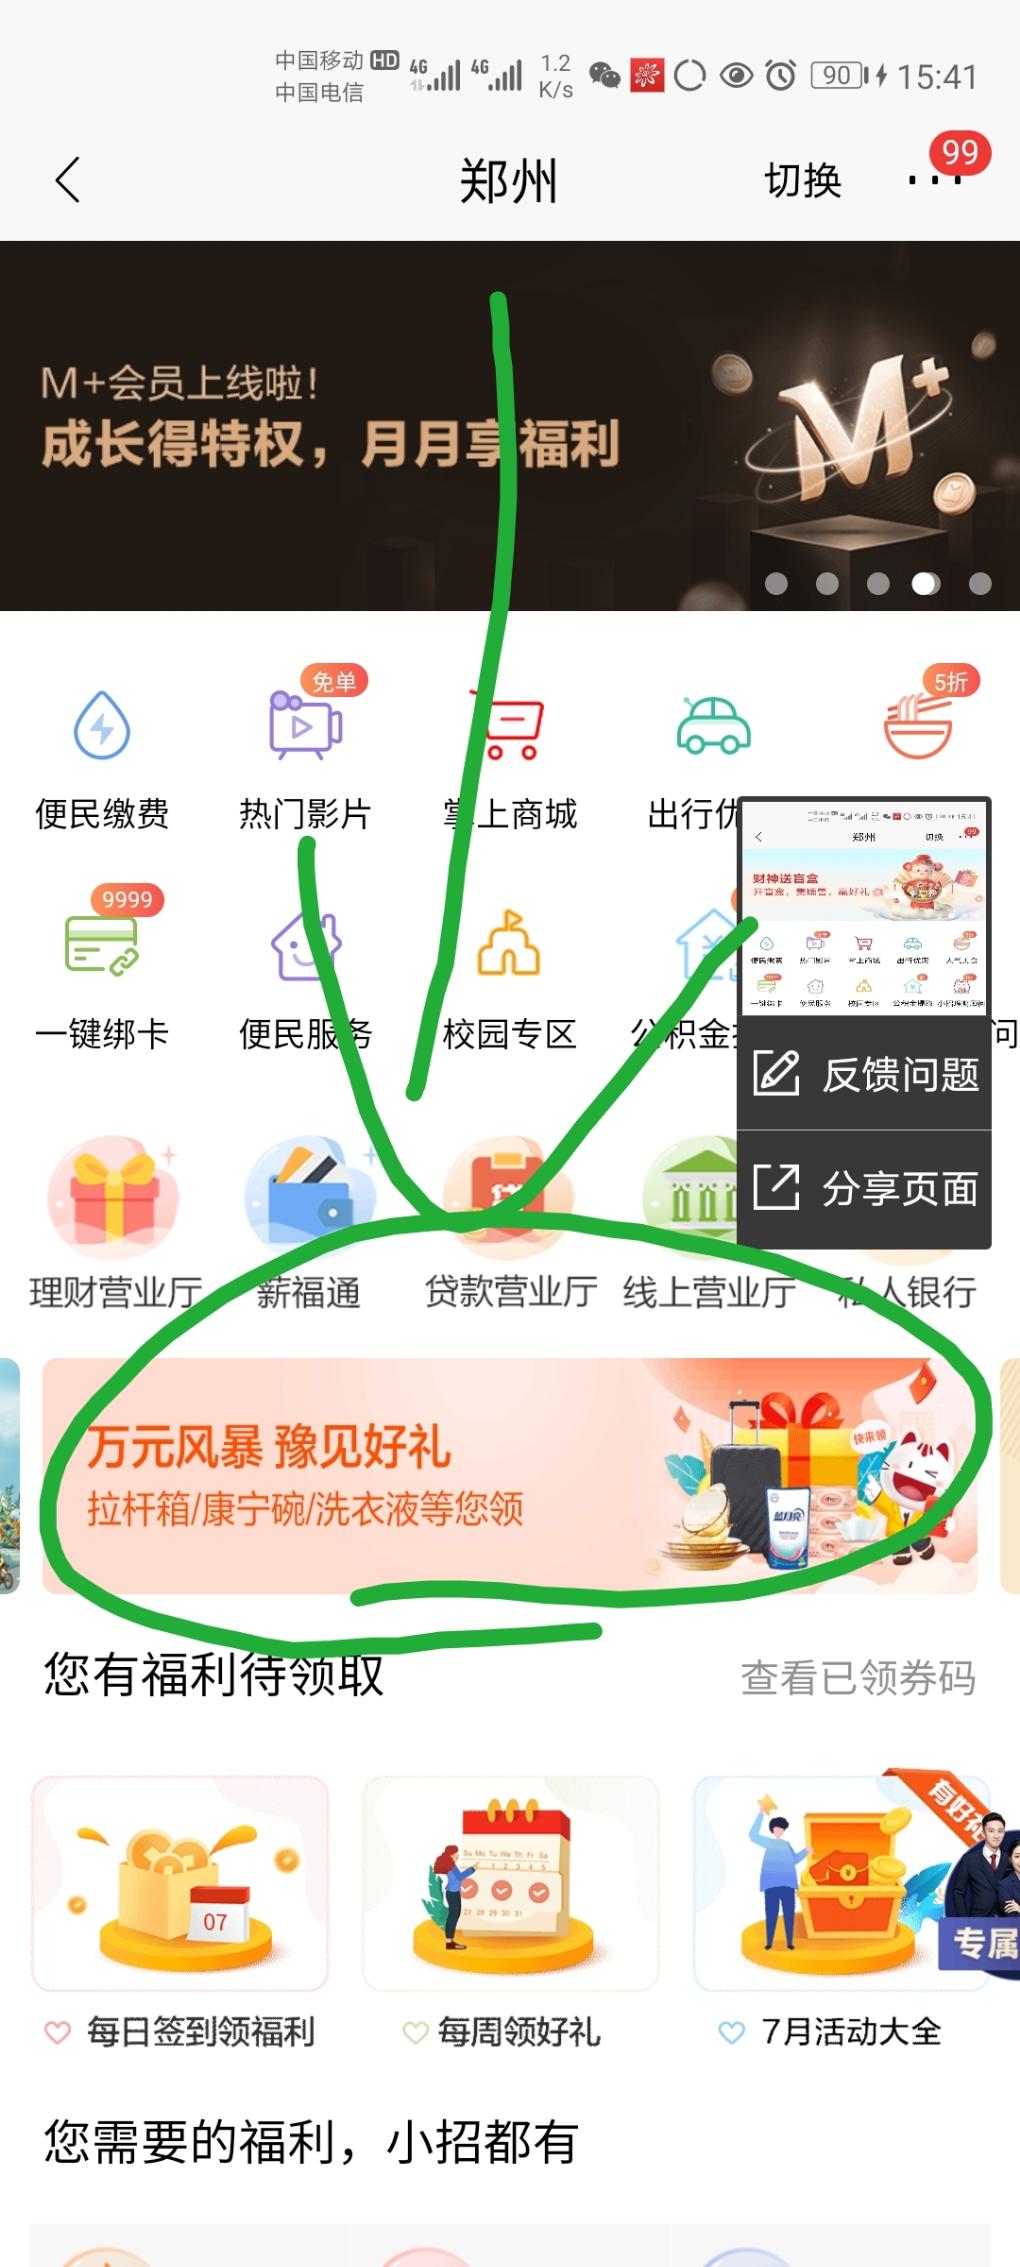 补充一个招商-郑州城市服务-上月高于一万-1分领实物-惠小助(52huixz.com)